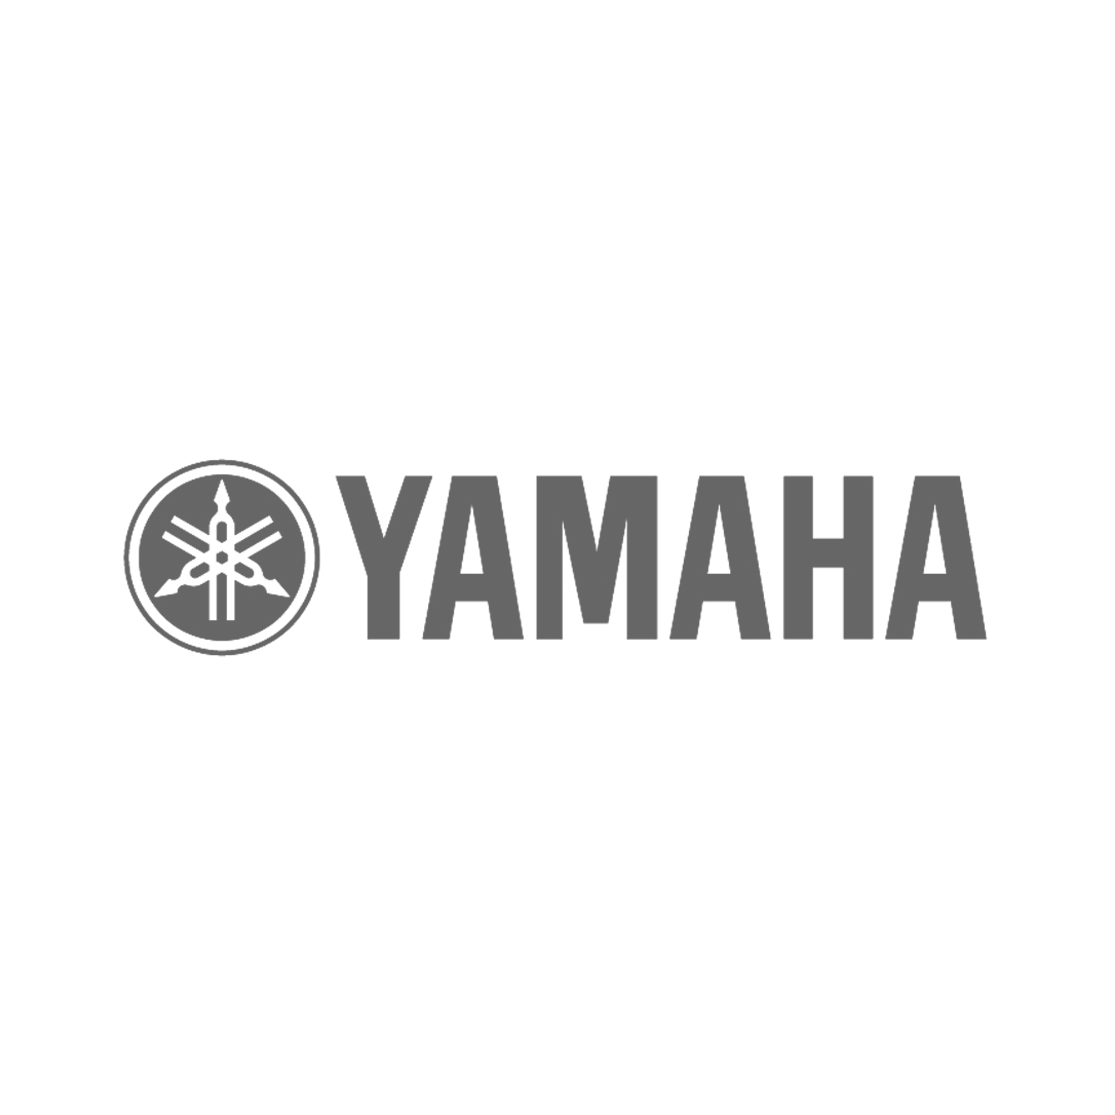 Yamaha.png